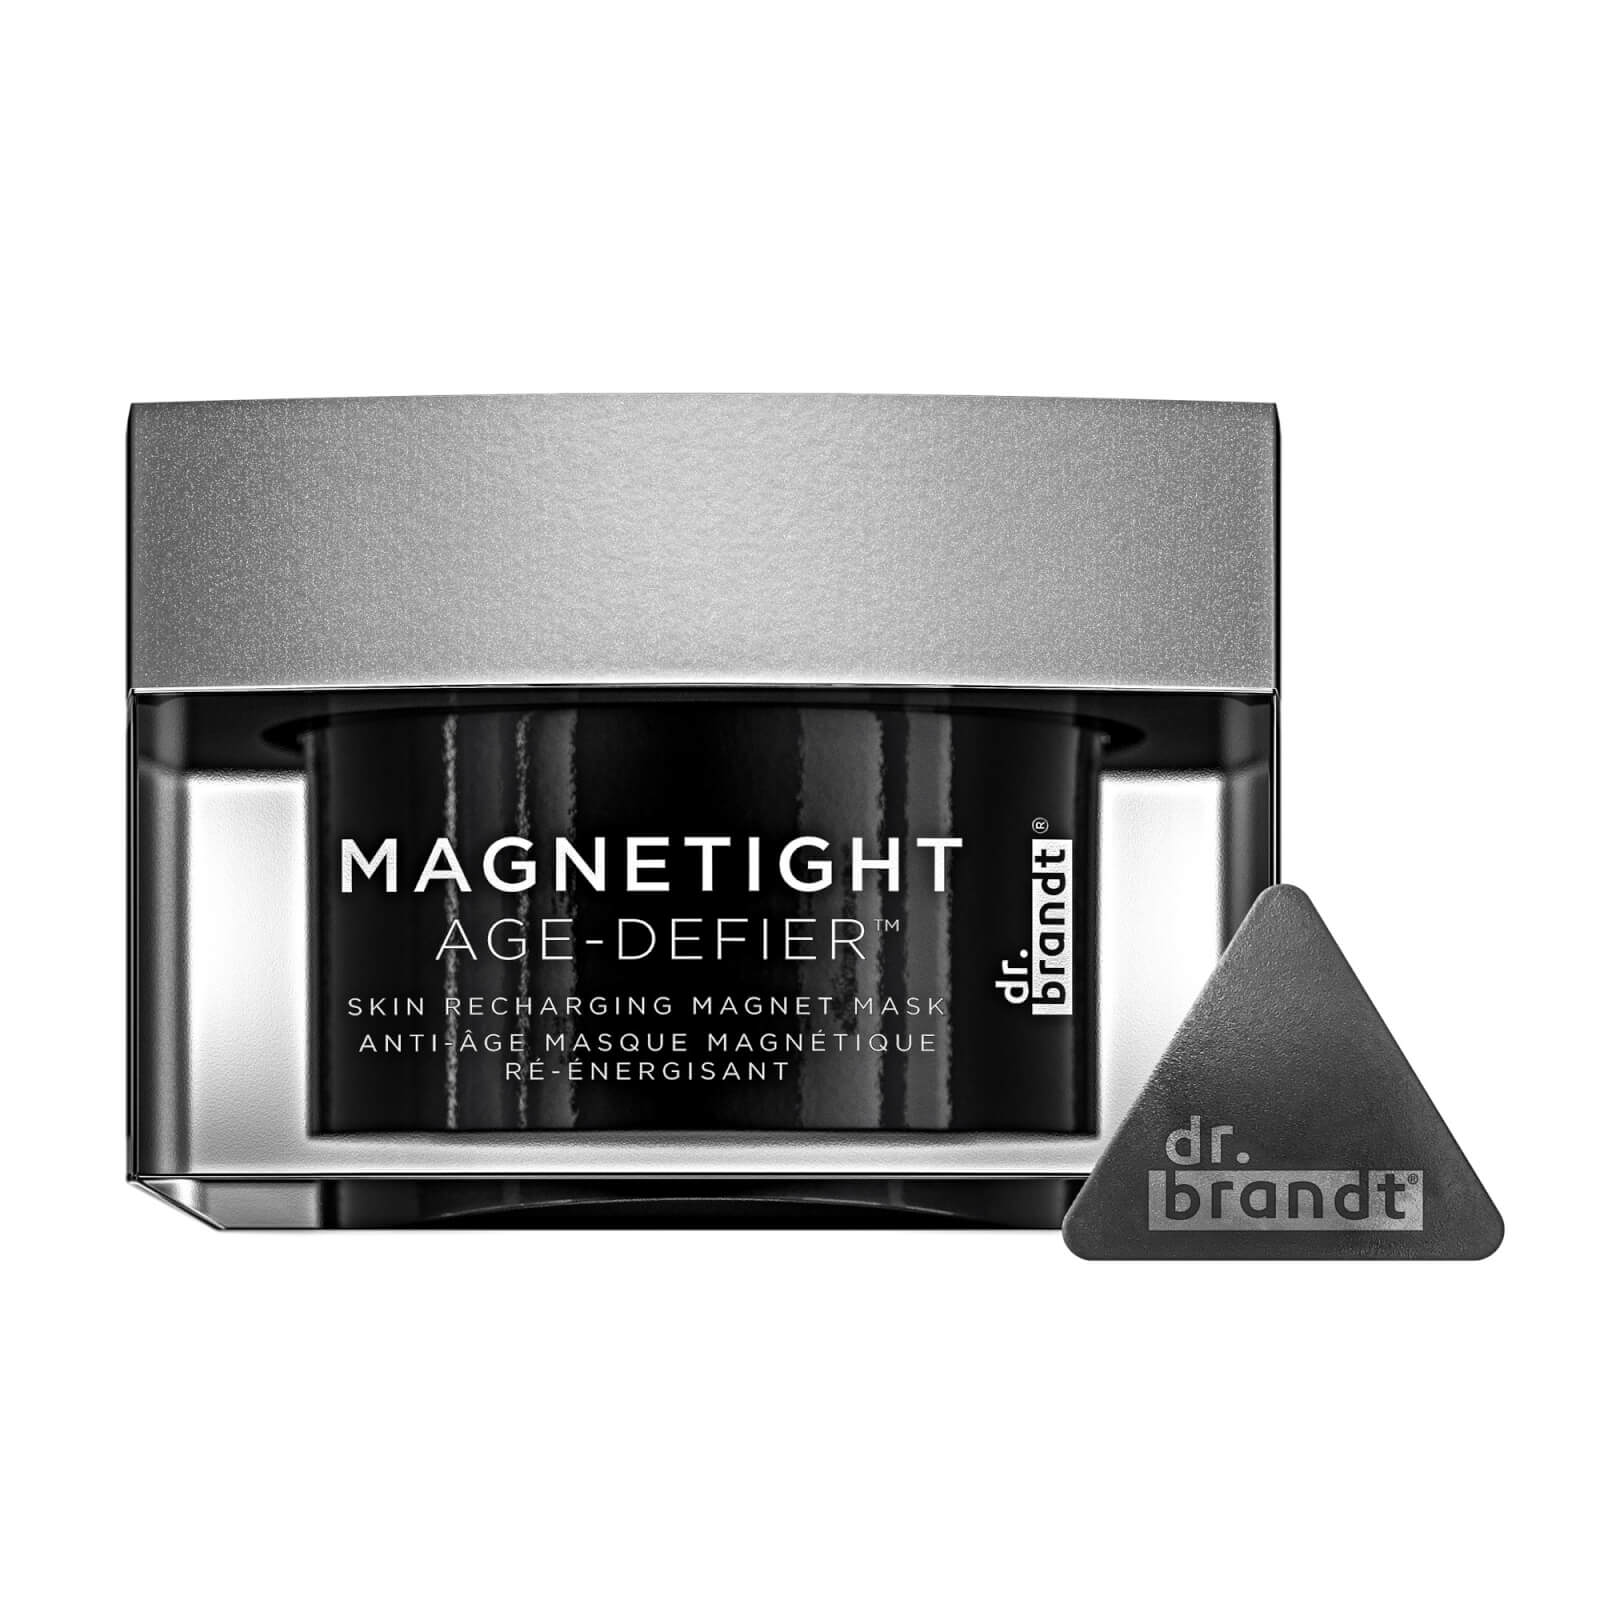 Image of Dr. Brandt Magnetight Age-Defier Skin Recharging Magnet Mask 90g